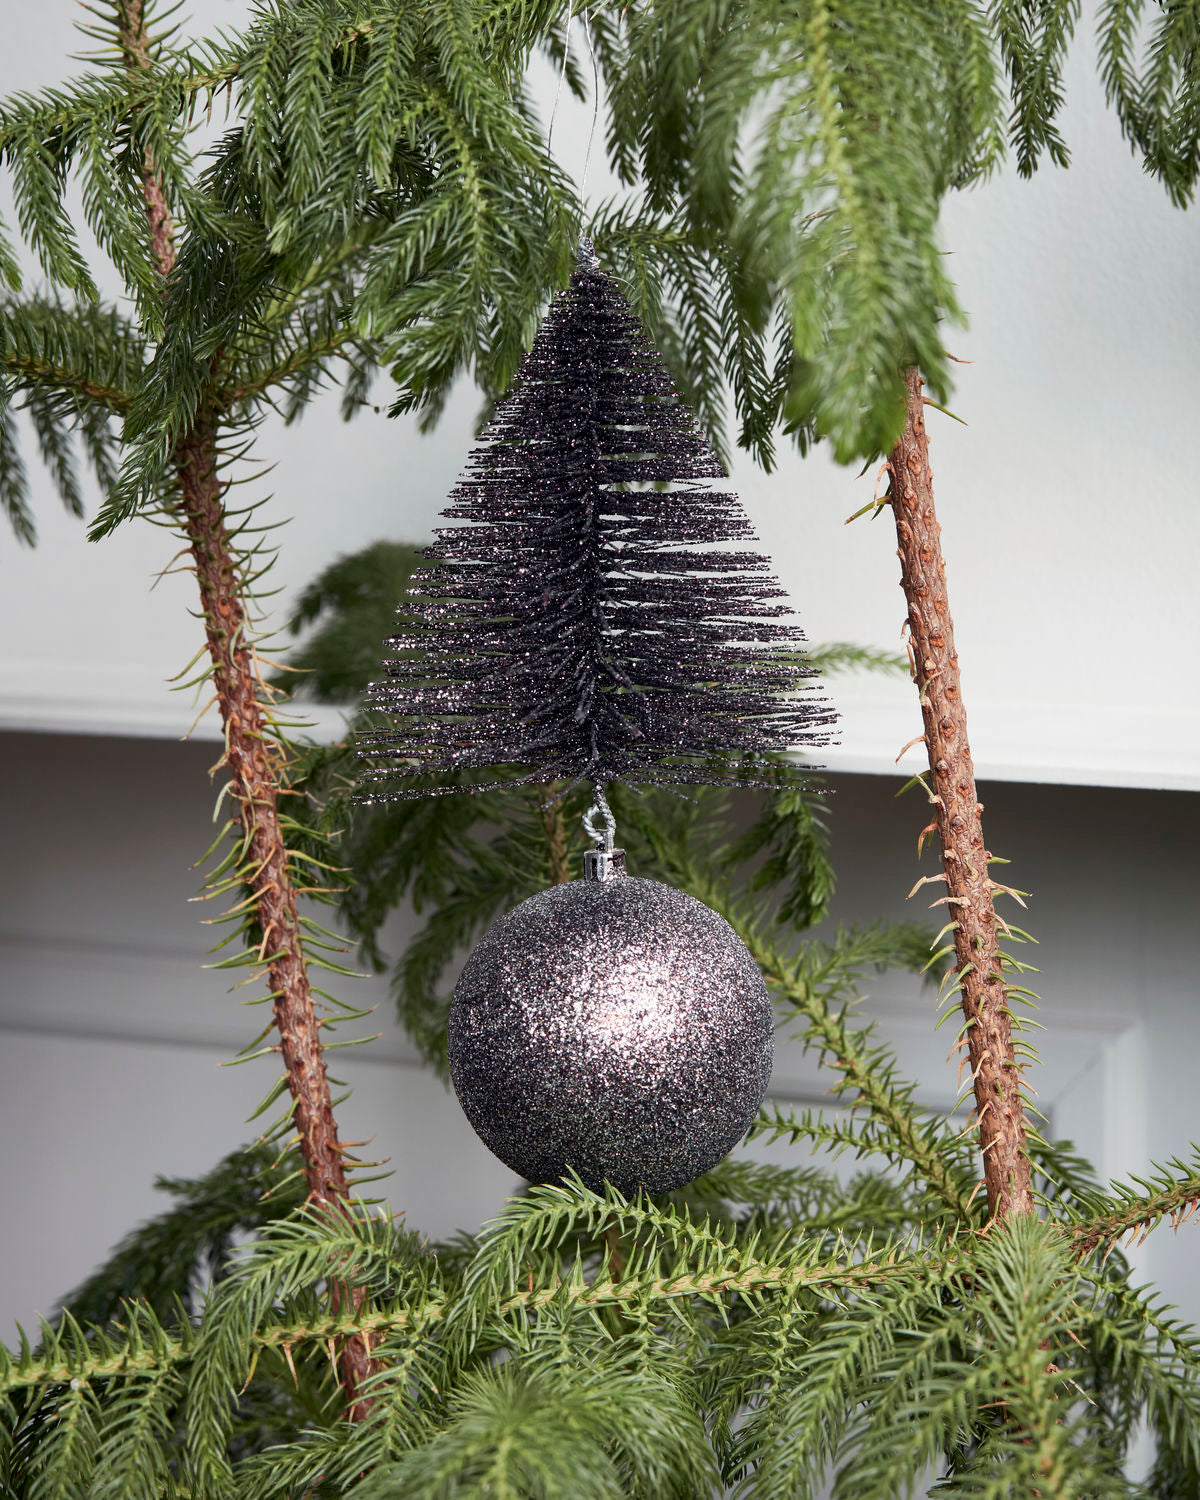 Ornament, Tree & Bell (X2)